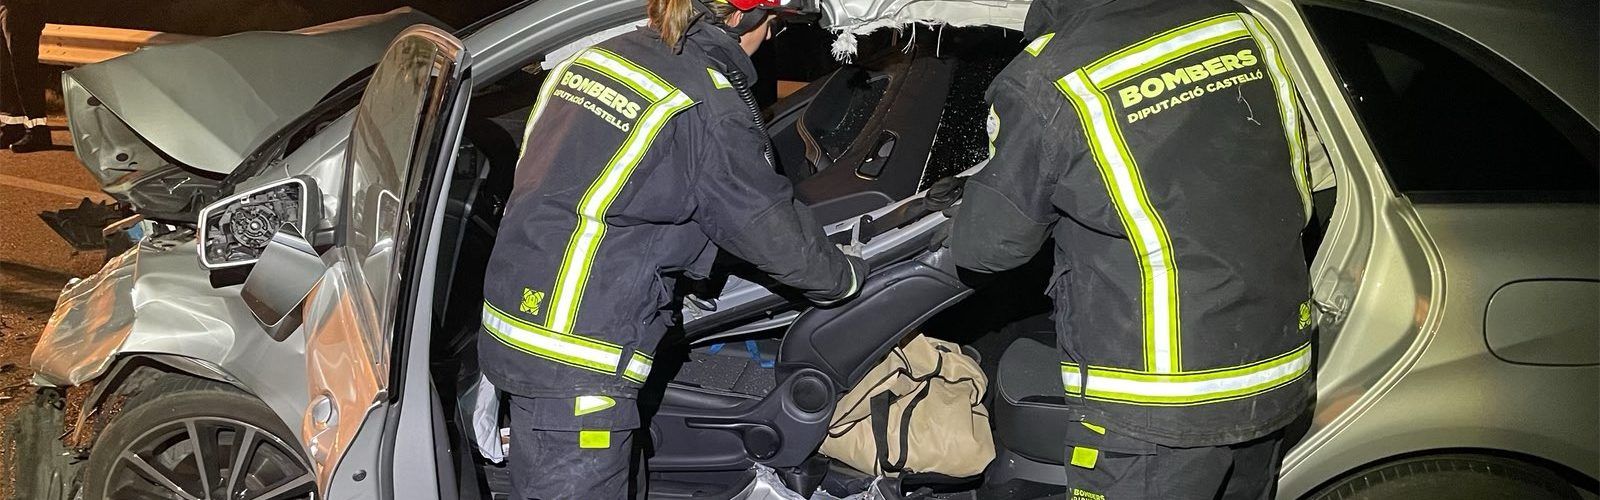 La Guardia Civil investiga el siniestro vial ocurrido en Xert con resultado de dos personas fallecidas